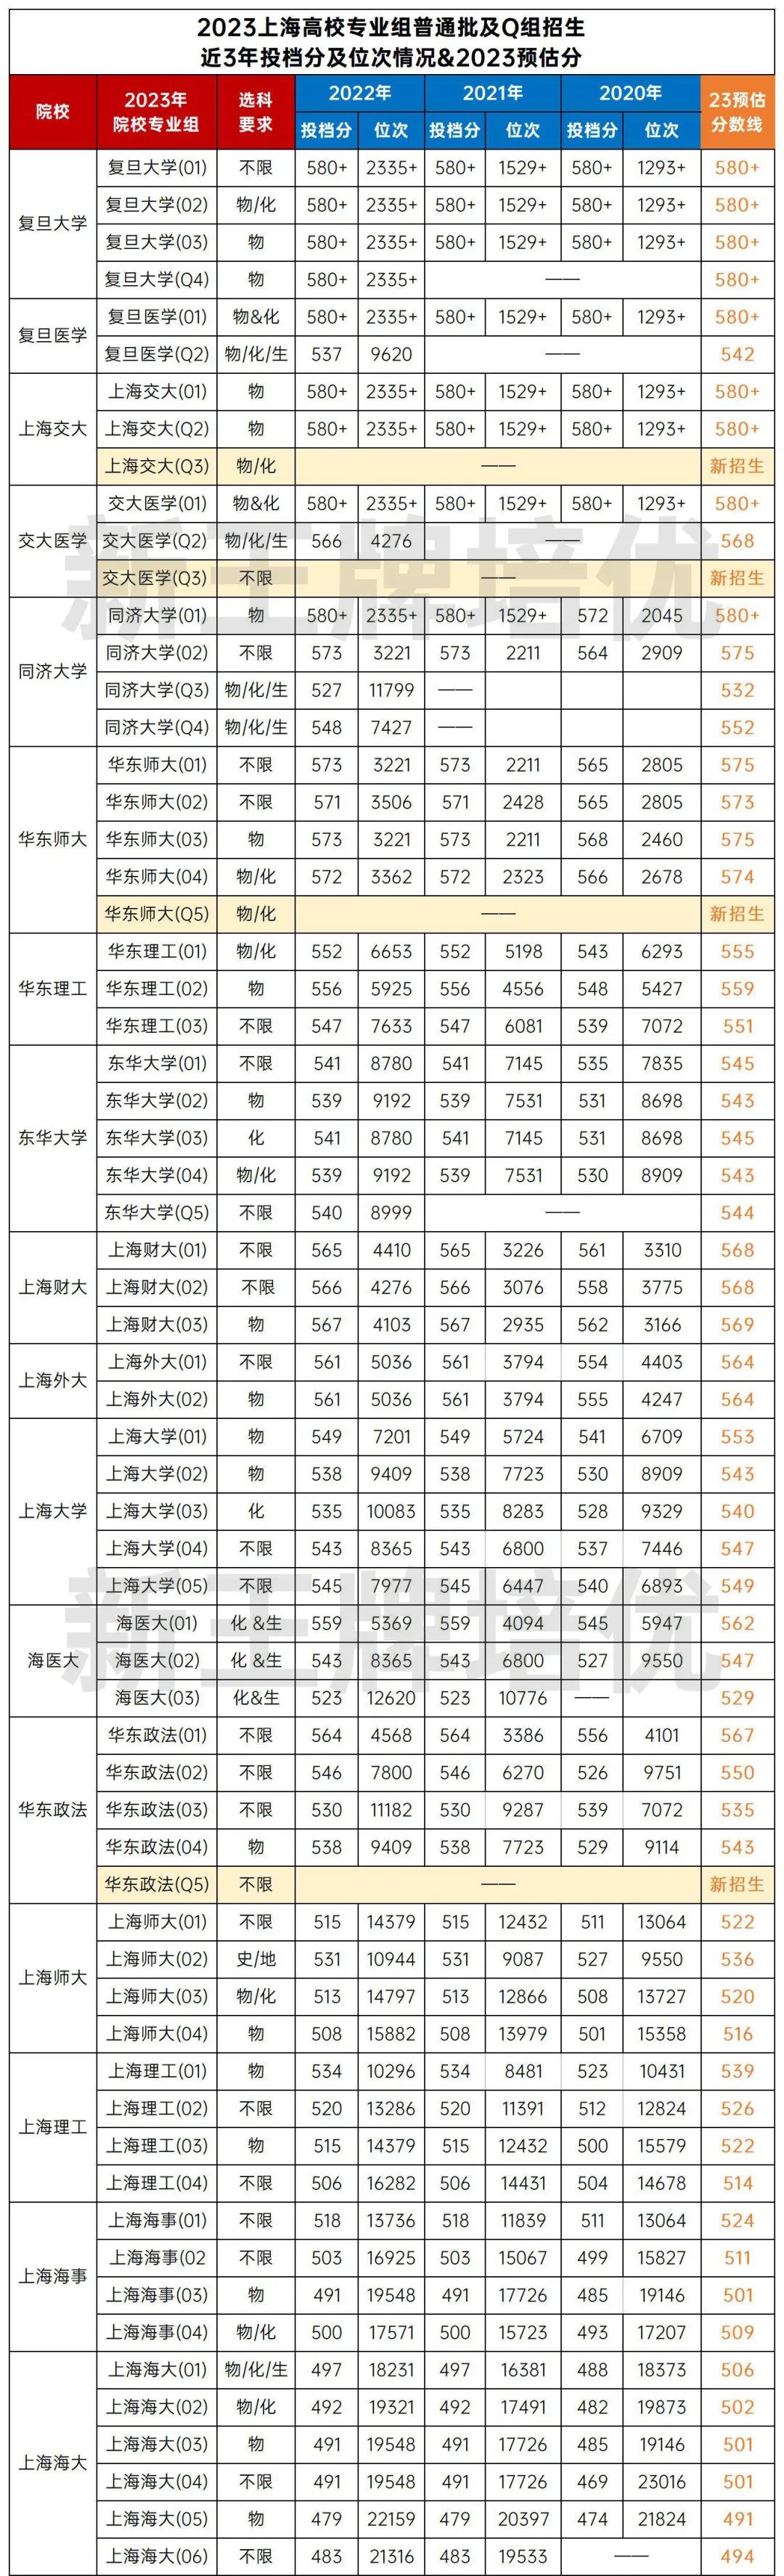 2023上海高校专业组普通批预估分